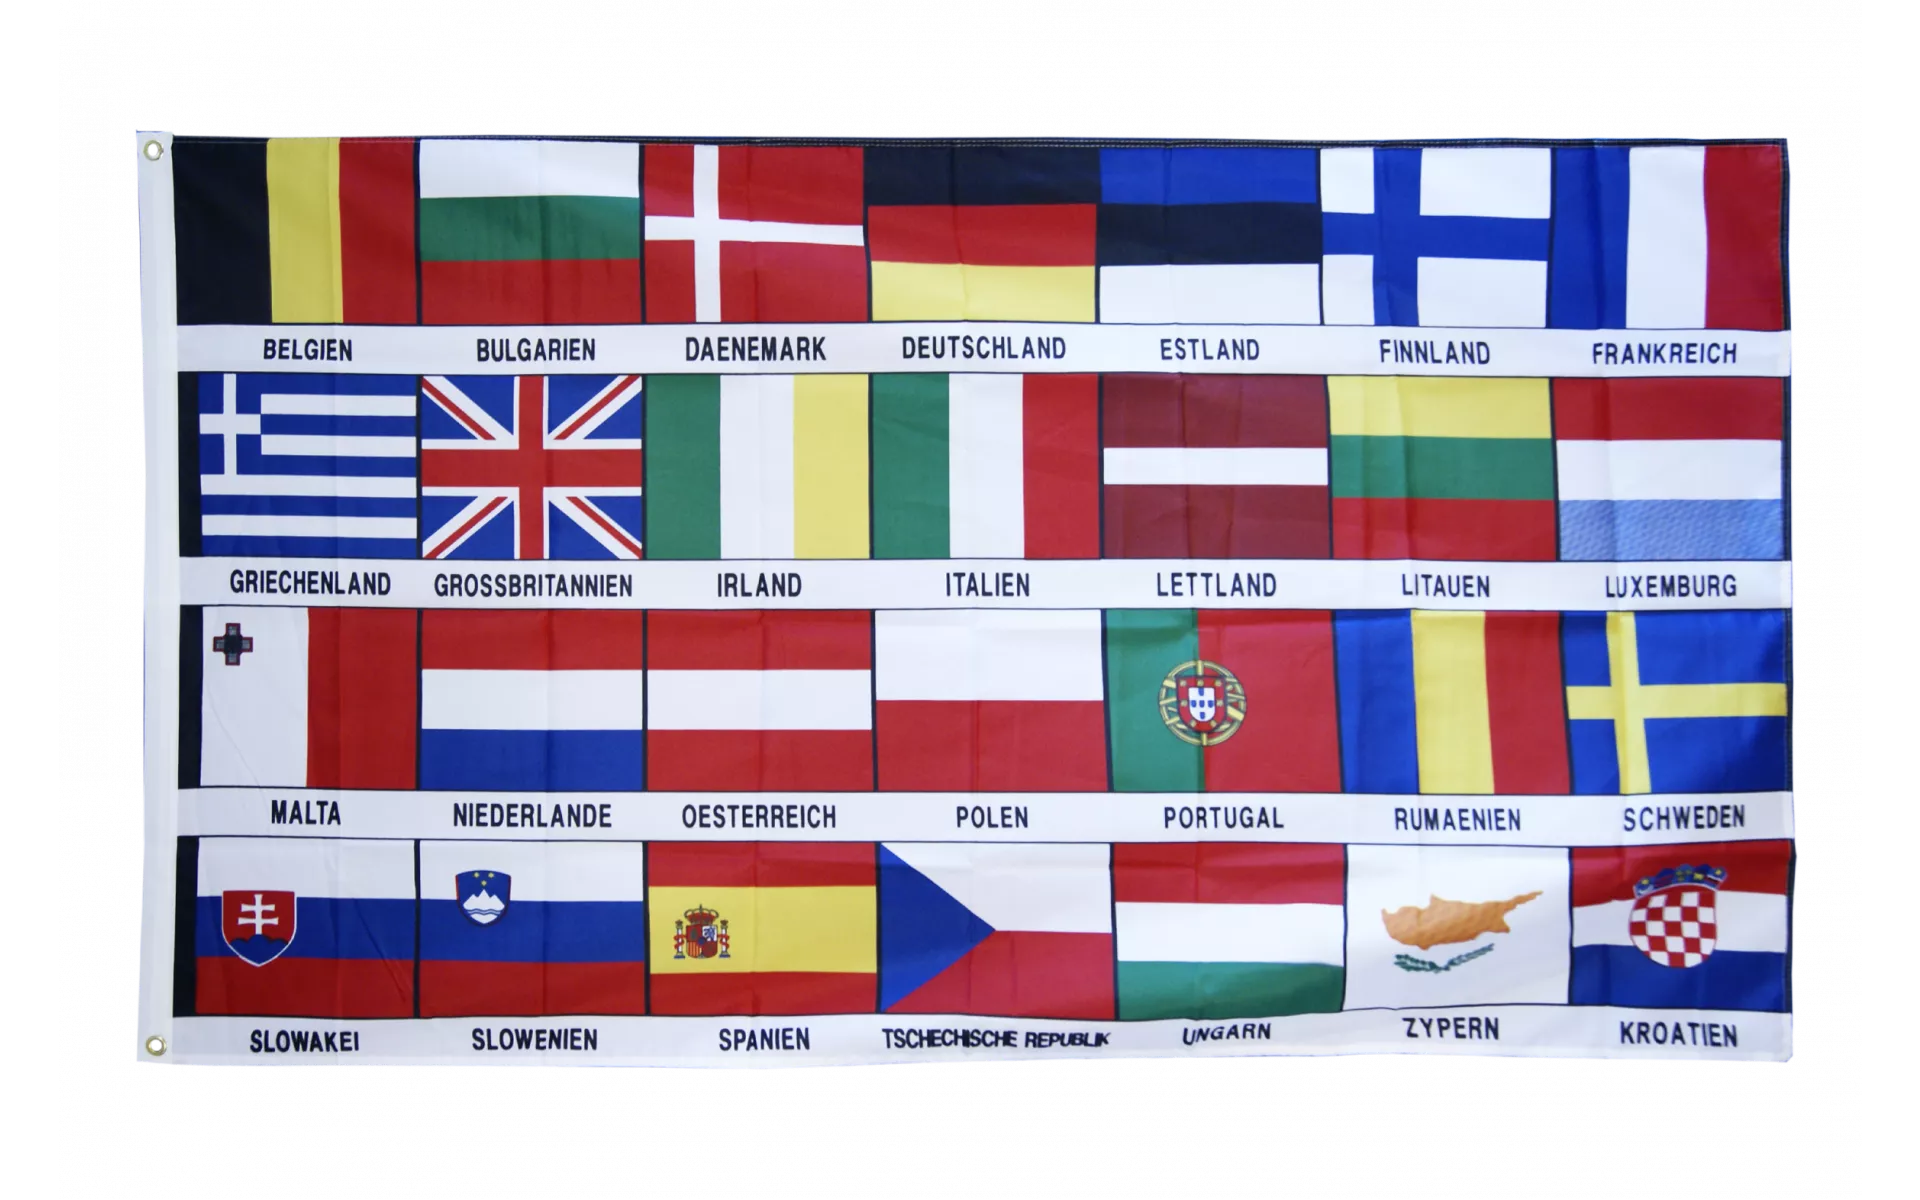 Illustration Der Eu, Flagge, Europa Flagge, Europäische Flaggen